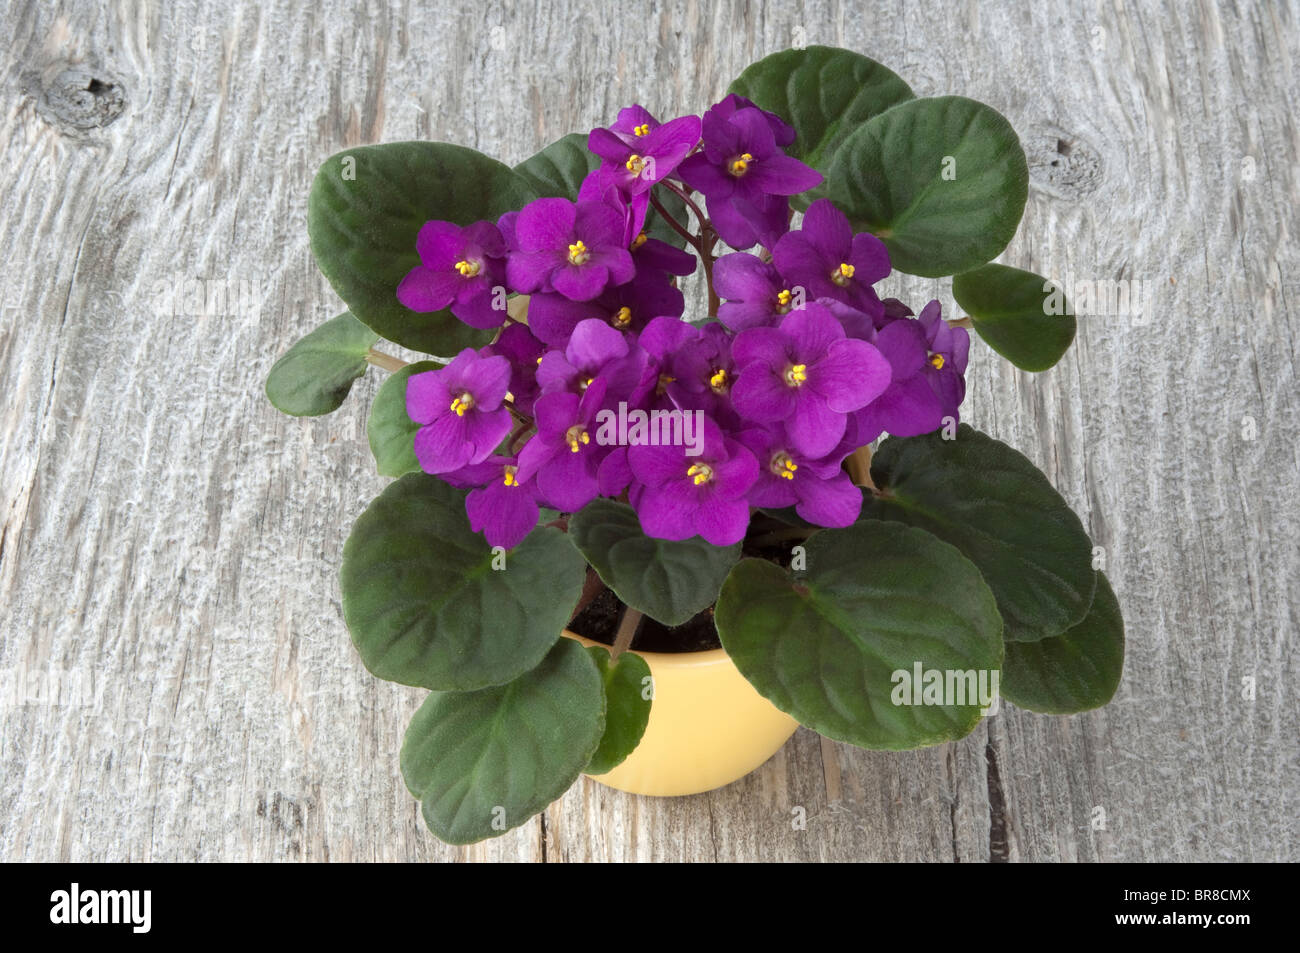 Saintpaulia, la violette africaine (Saintpaulia ionantha-Hybride), plante en pot à fleurs violettes sur le bois. Banque D'Images